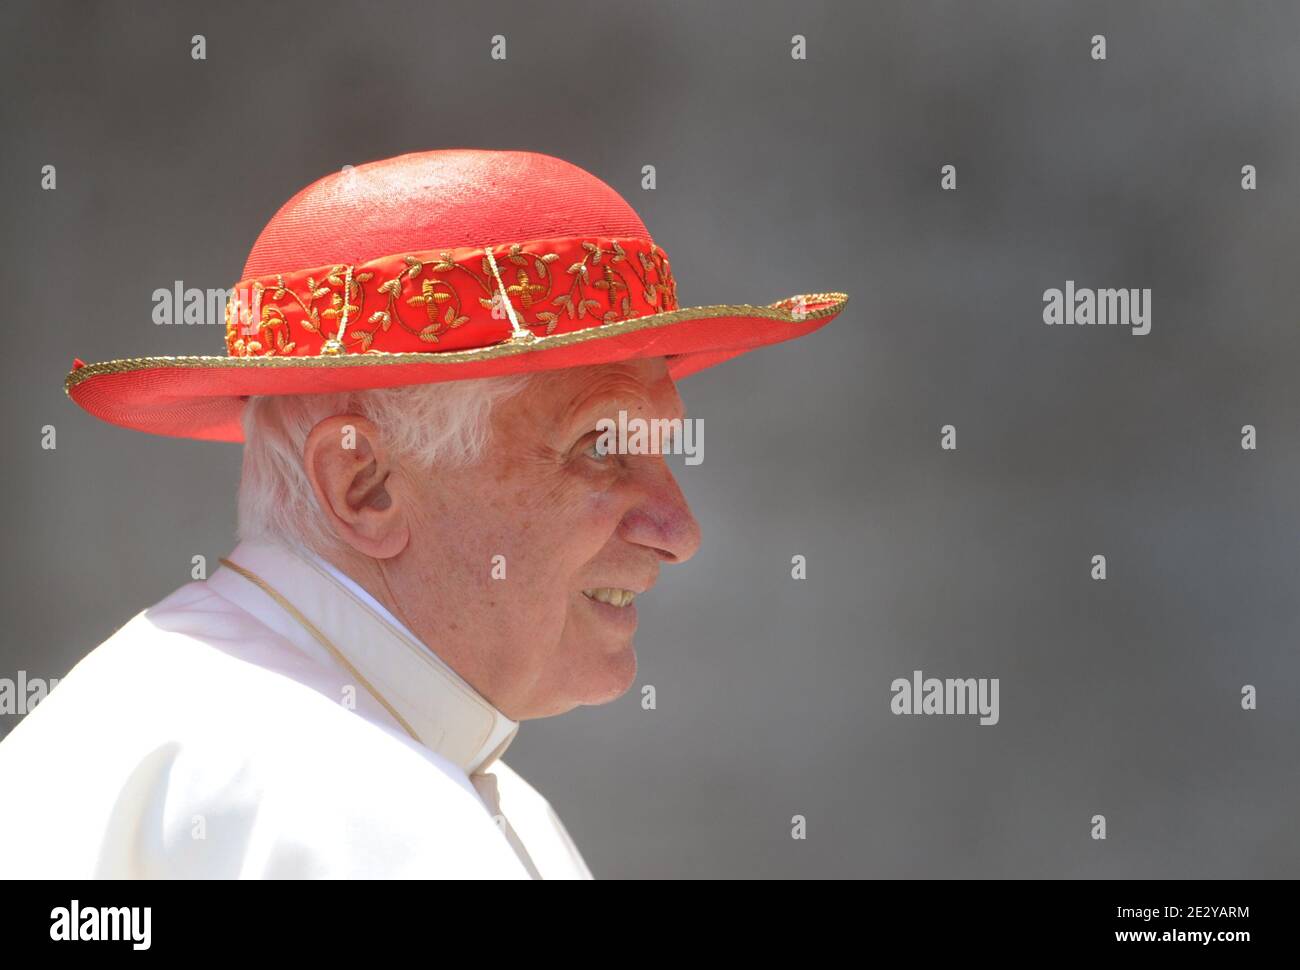 Journée ensoleillée à Rome : le Pape Benoît XVI porte son chapeau rouge  Saturne , nommé d'après la planète annelée Saturne, à la fin de l'audience  générale hebdomadaire sur la place Saint-Pierre